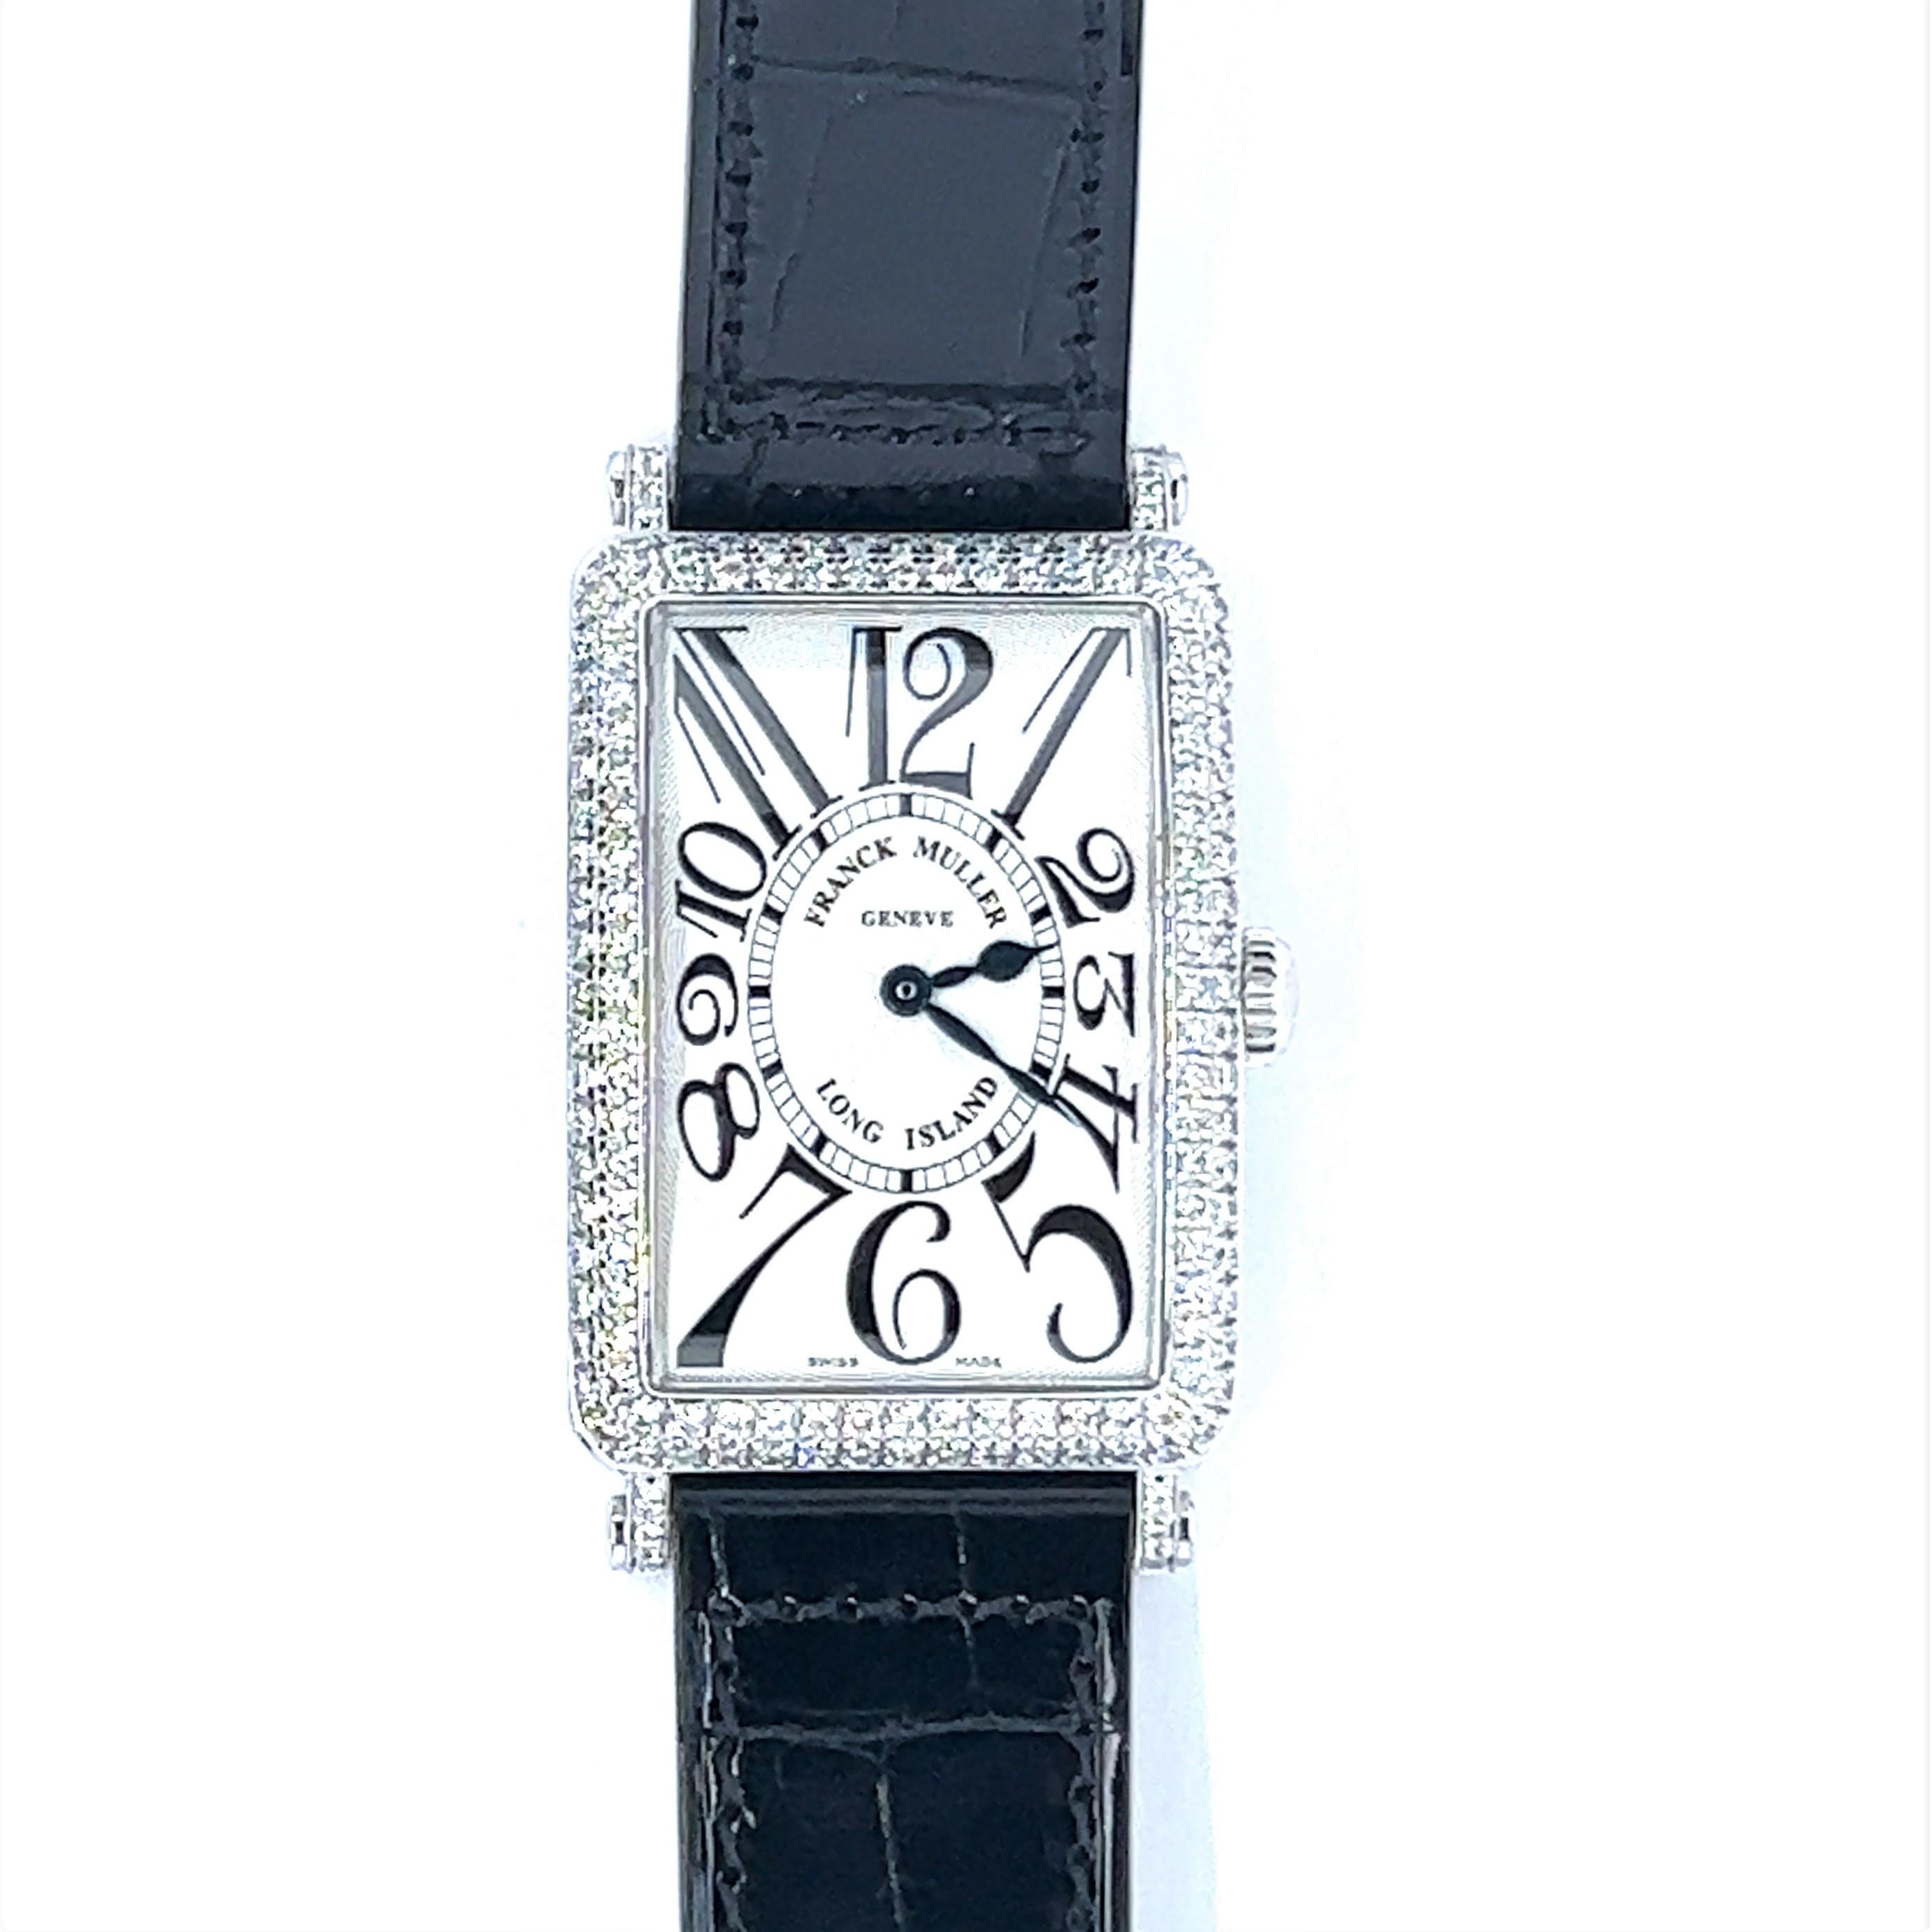 Franck Muller est un horloger suisse fondé en 1991, connu pour son art exceptionnel, ses designs innovants et ses montres haut de gamme. La marque est reconnue pour ses mouvements horlogers uniques et complexes et ses designs avant-gardistes. Elle